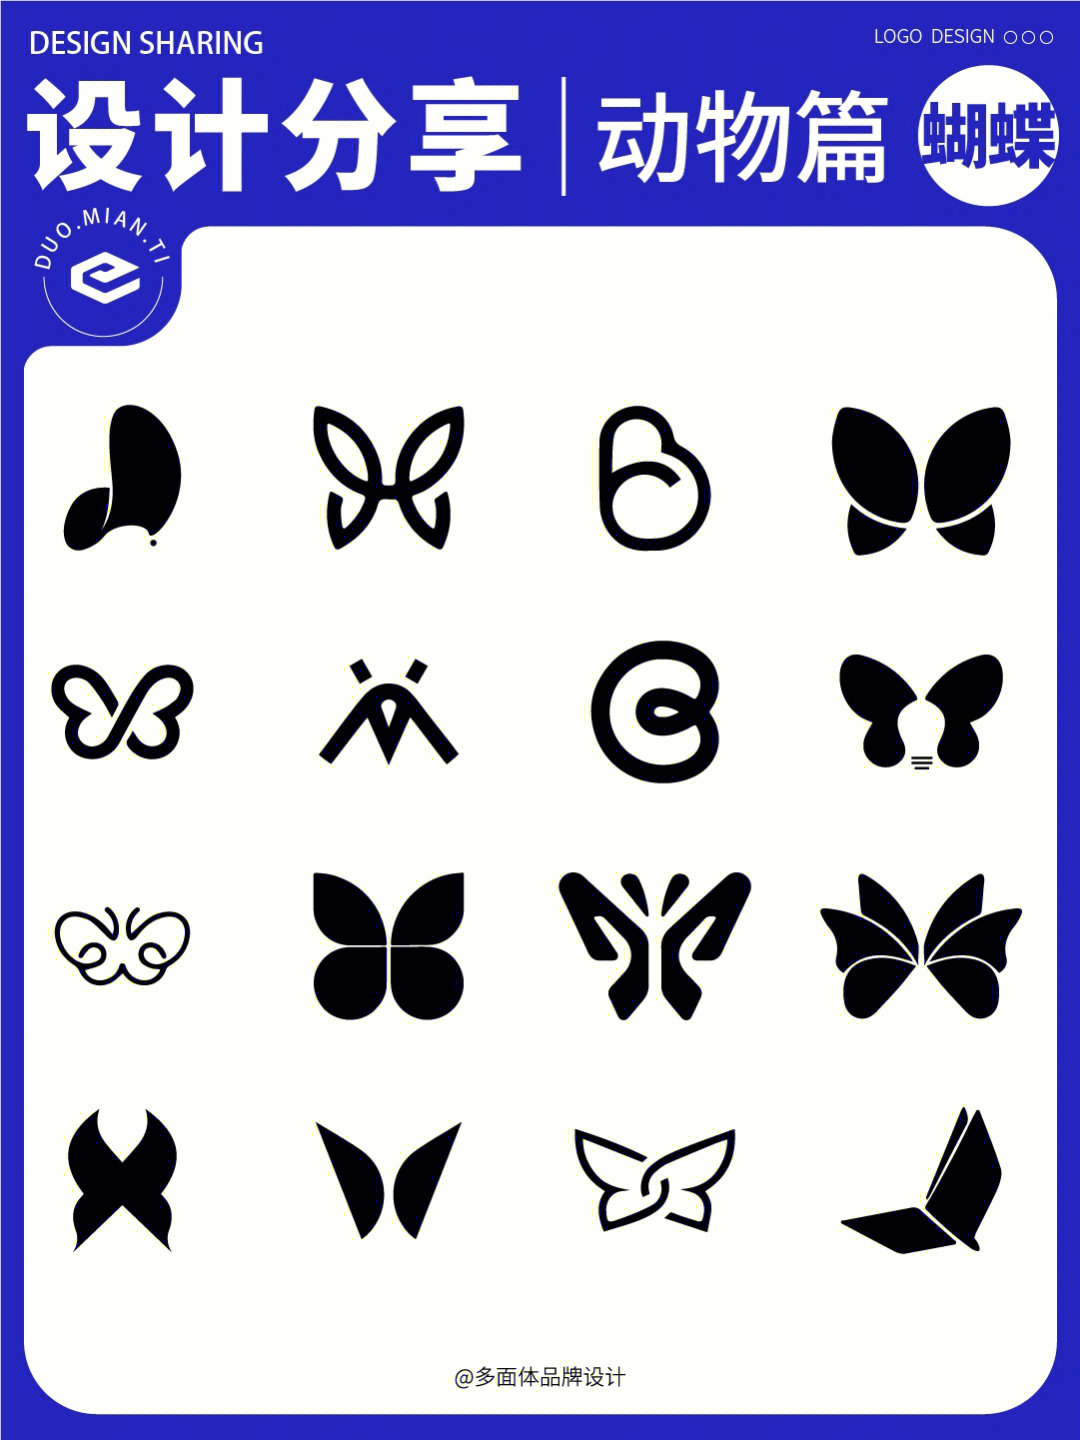 设计分享87动物篇logo蝴蝶03